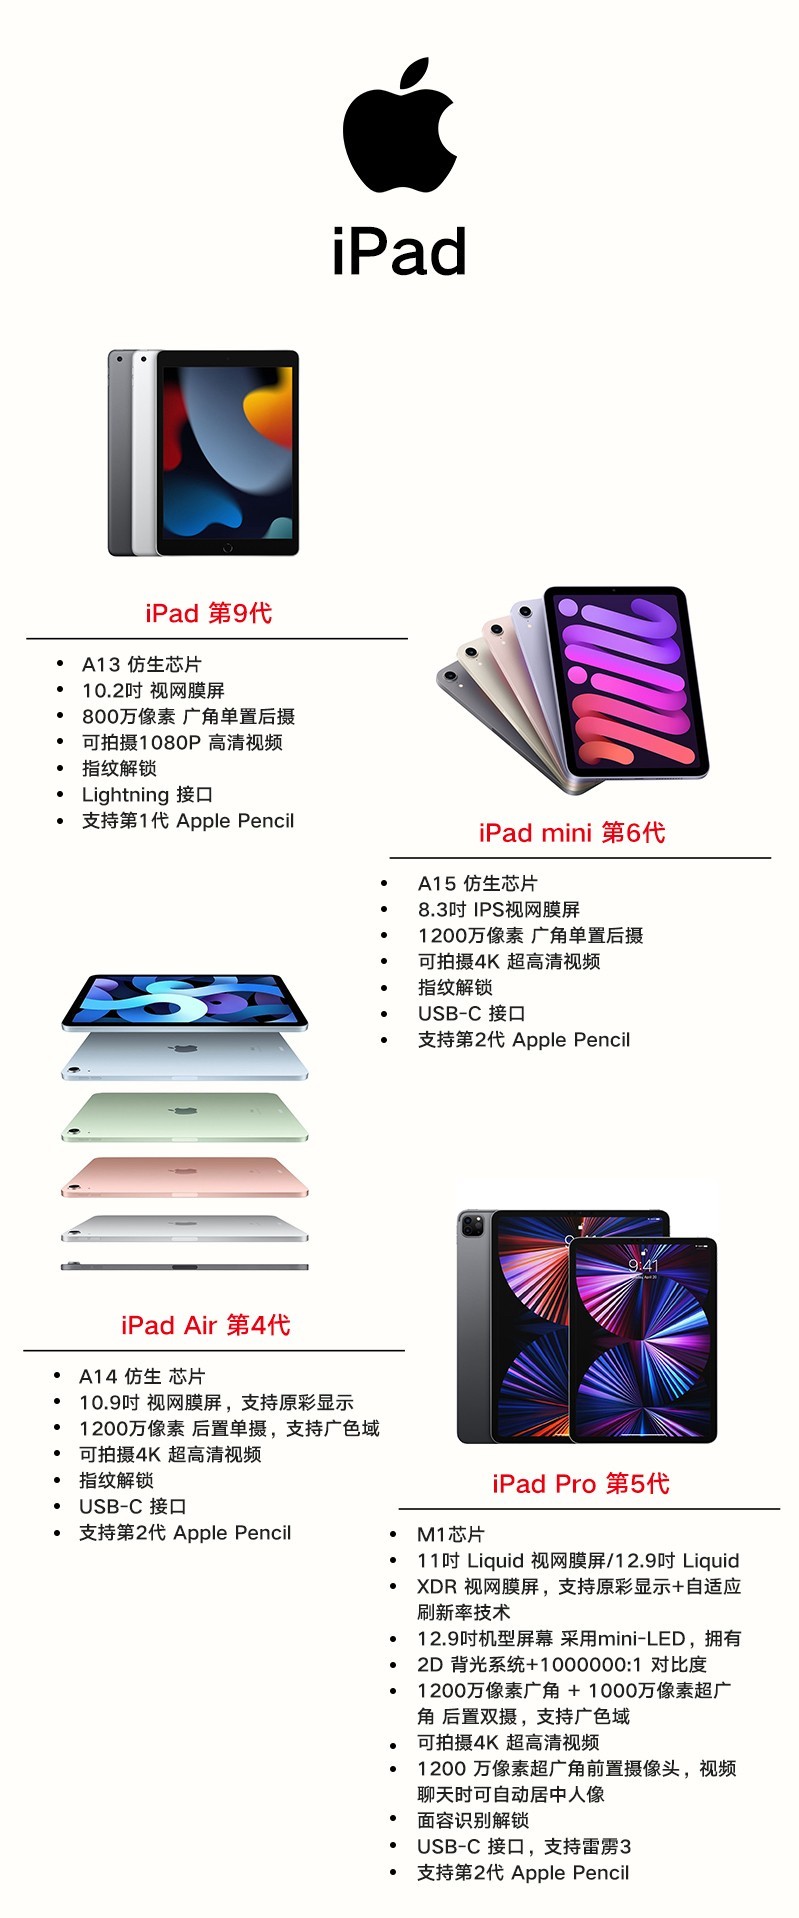 2021款Apple iPad Mini 6 搭载A15芯片Wi-Fi版本$409 近史低- 北美省钱快报